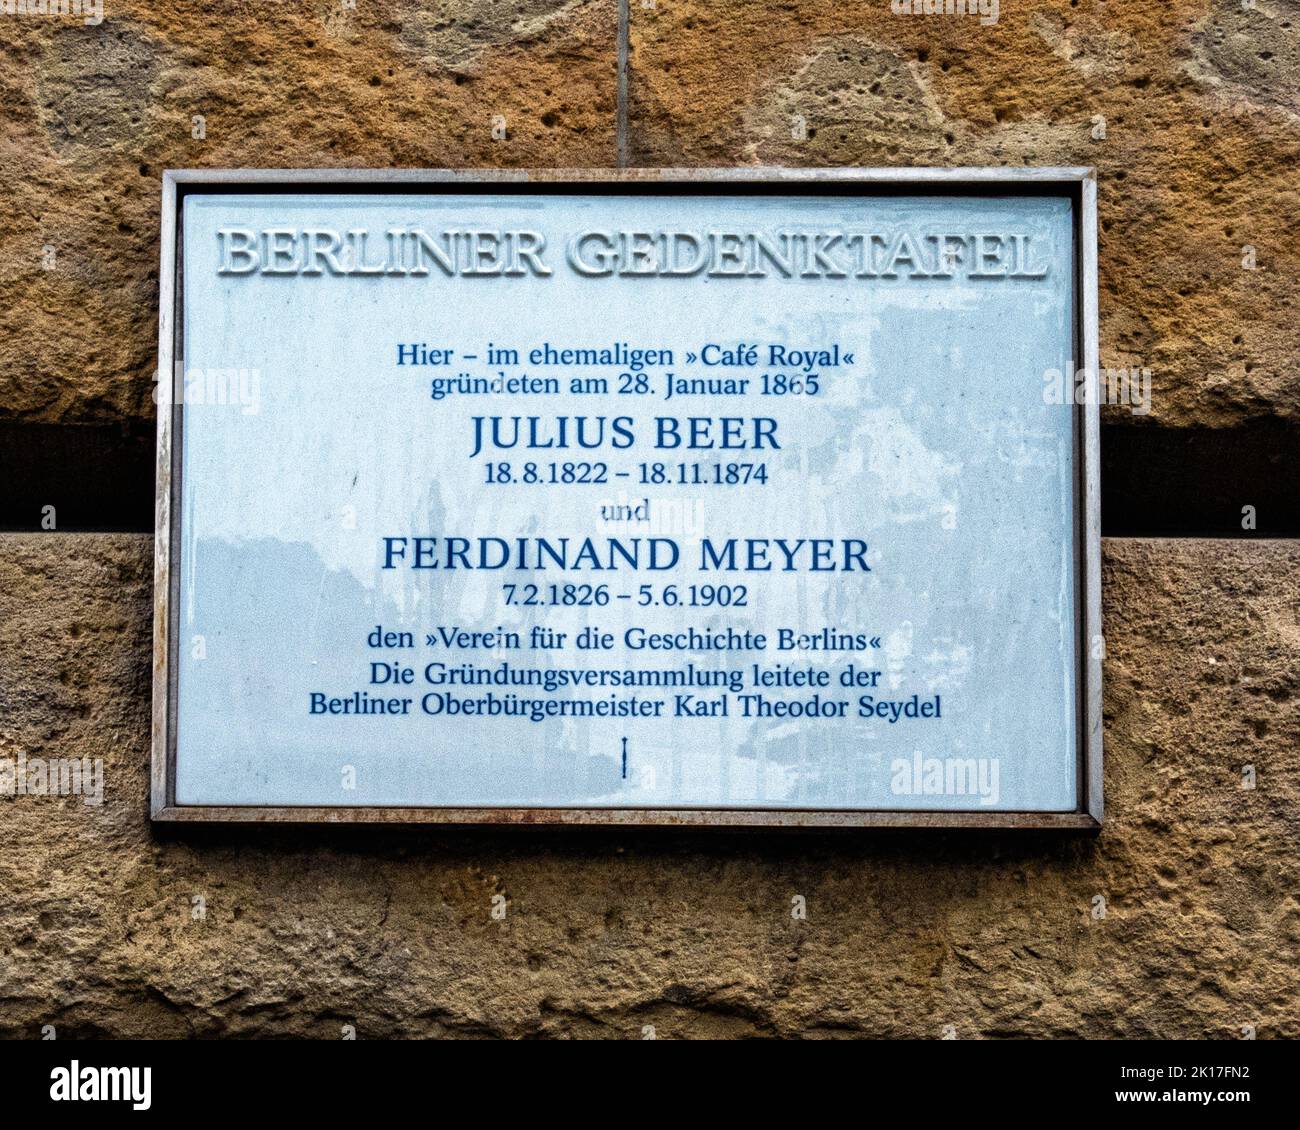 Berliner Gedenktafel, Commemorative plaque remembers Julius Beer & Ferdinand Meyer, founders of The Cafe Royal,Unter den Linden 13, Mitte-Berlin Stock Photo